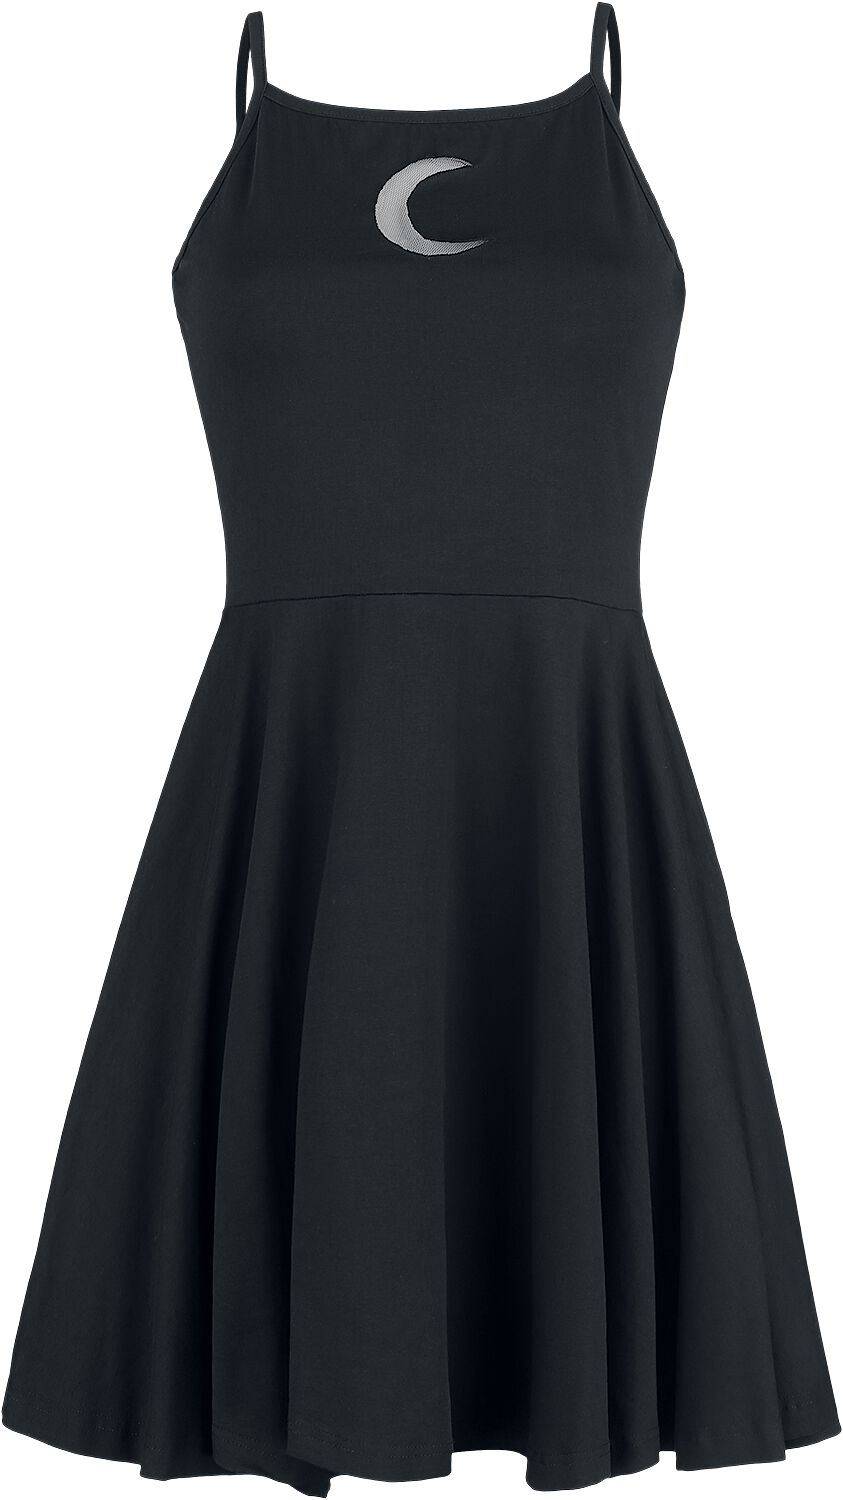 Heartless - Gothic Kurzes Kleid - Zaylee Dress - XS bis XL - für Damen - Größe XL - schwarz